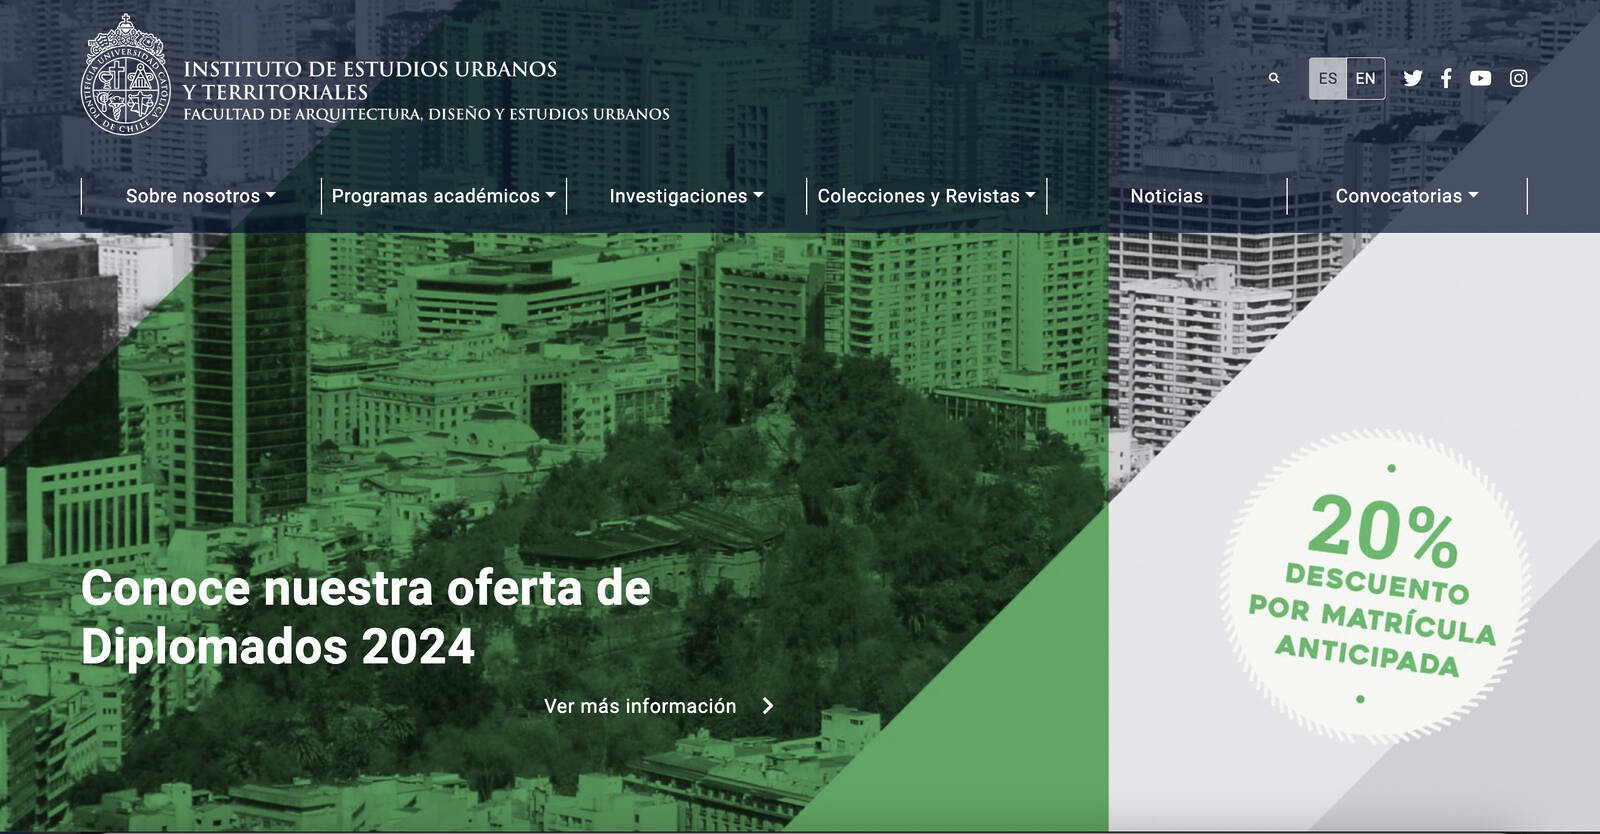 Profesores Arturo Orellana y Felipe Link son candidatos a la dirección del Instituto de Estudios Urbanos y Territoriales